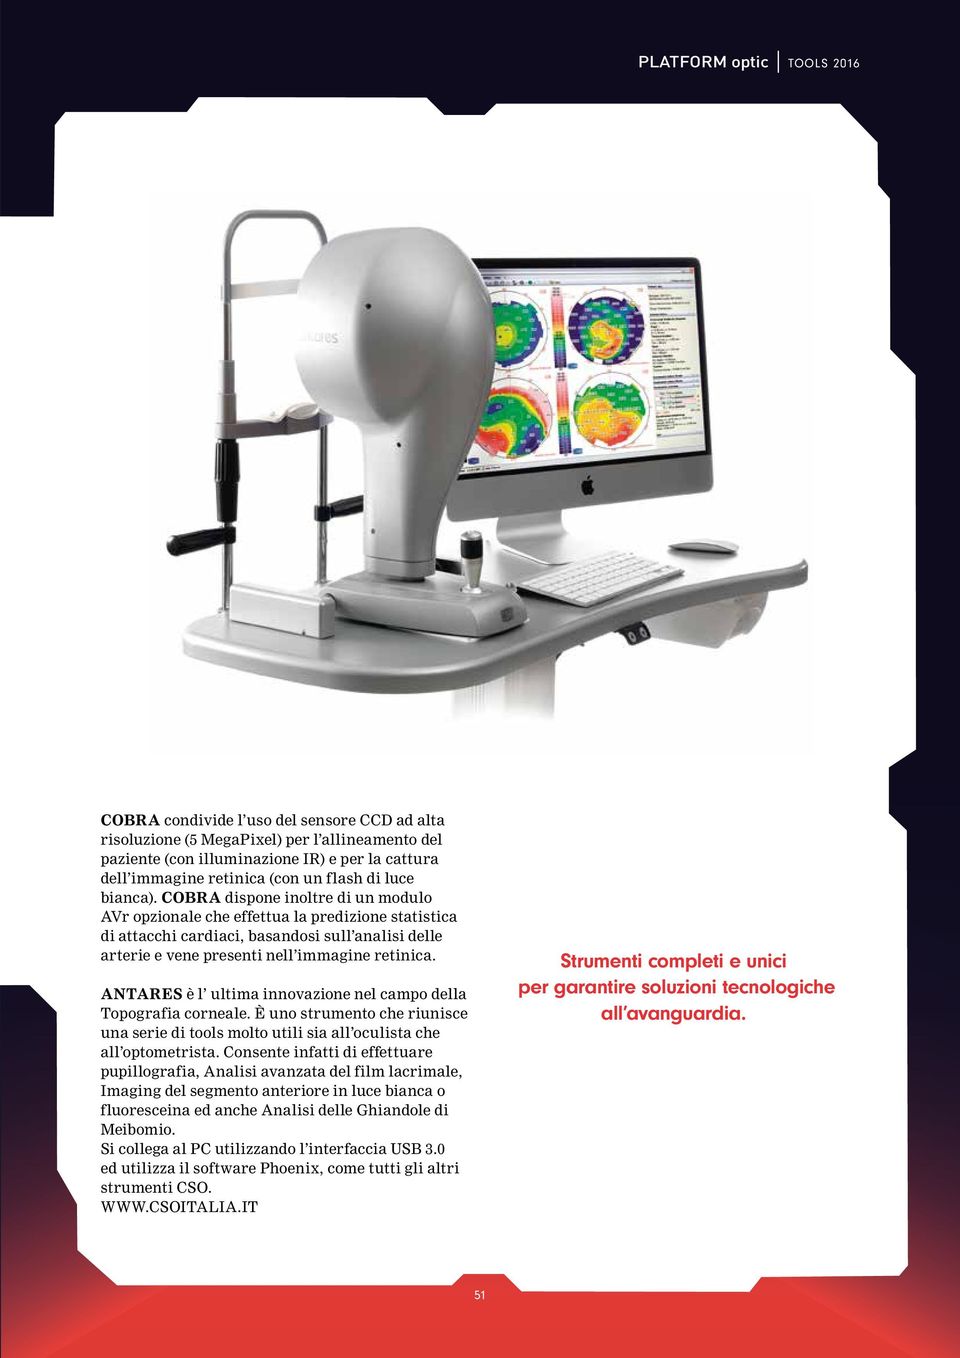 COBRA dispone inoltre di un modulo AVr opzionale che effettua la predizione statistica di attacchi cardiaci, basandosi sull analisi delle arterie e vene presenti nell immagine retinica.